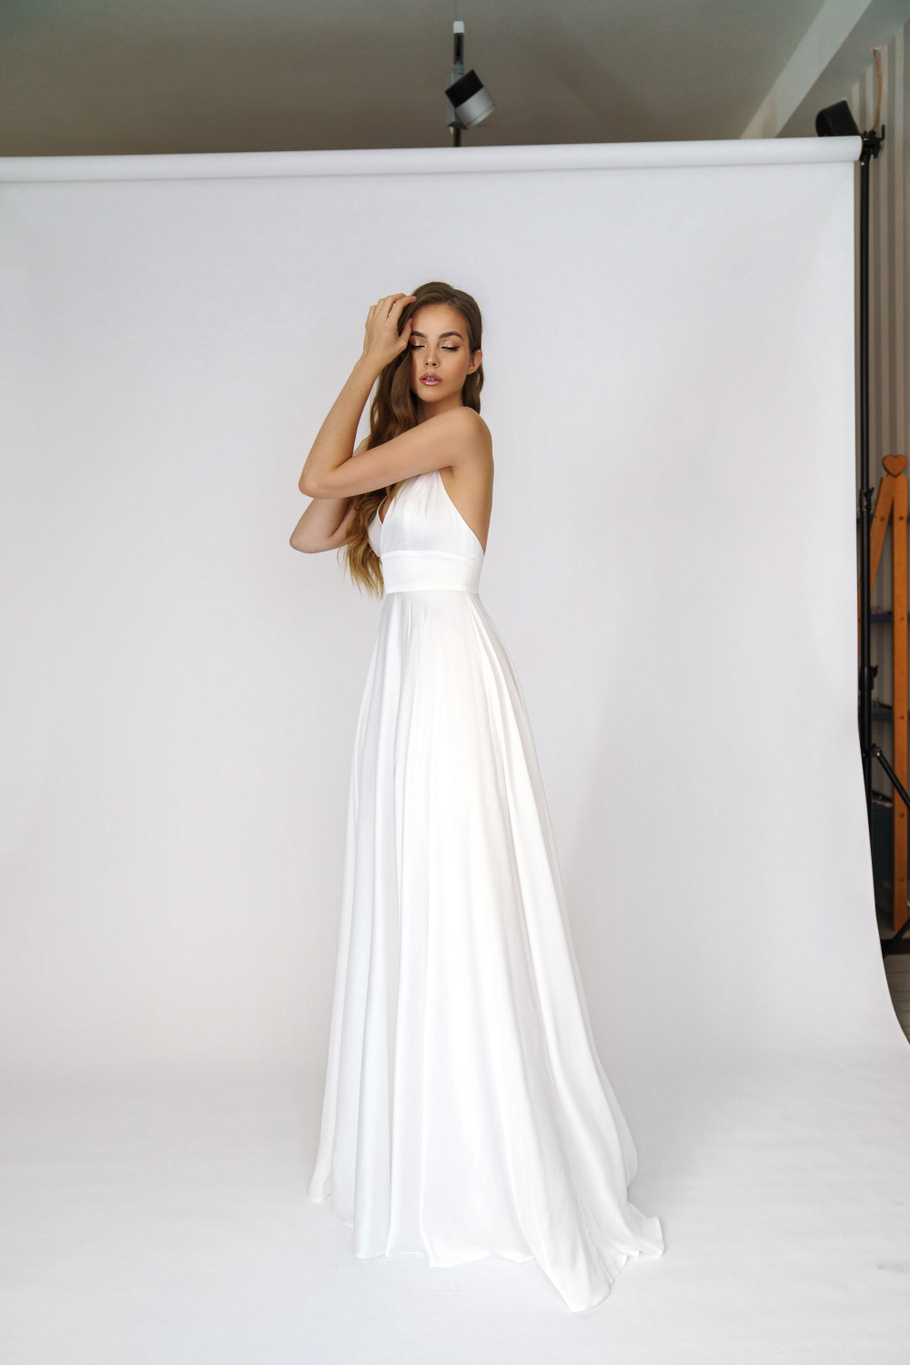 Свадебное платье «Онити» Марта — купить в Ярославле платье Онити из коллекции 2021 года